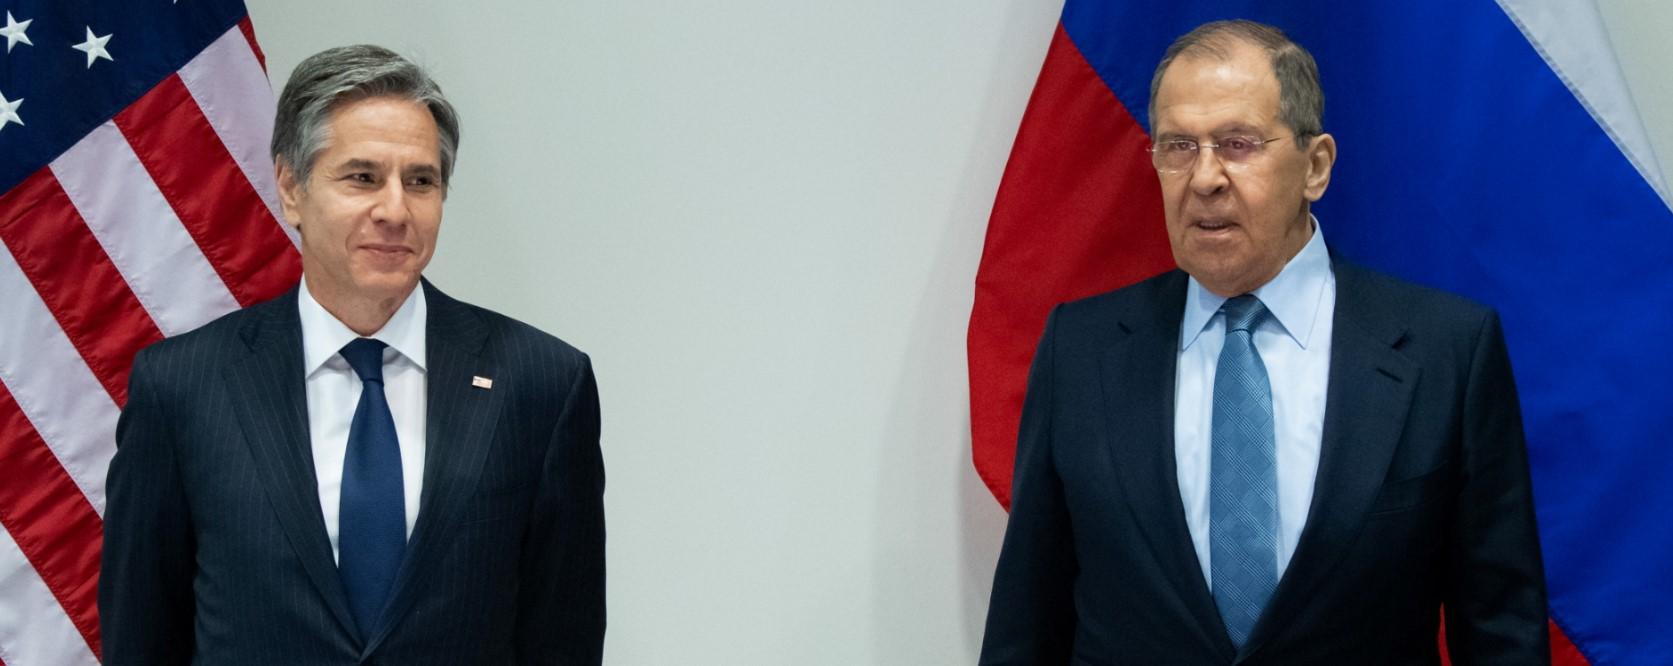 Blinken razgovarao s Lavrovom: Ruska agresija će biti dočekana odlučnim odgovorom, Lavrov rekao da SAD provocira Rusiju